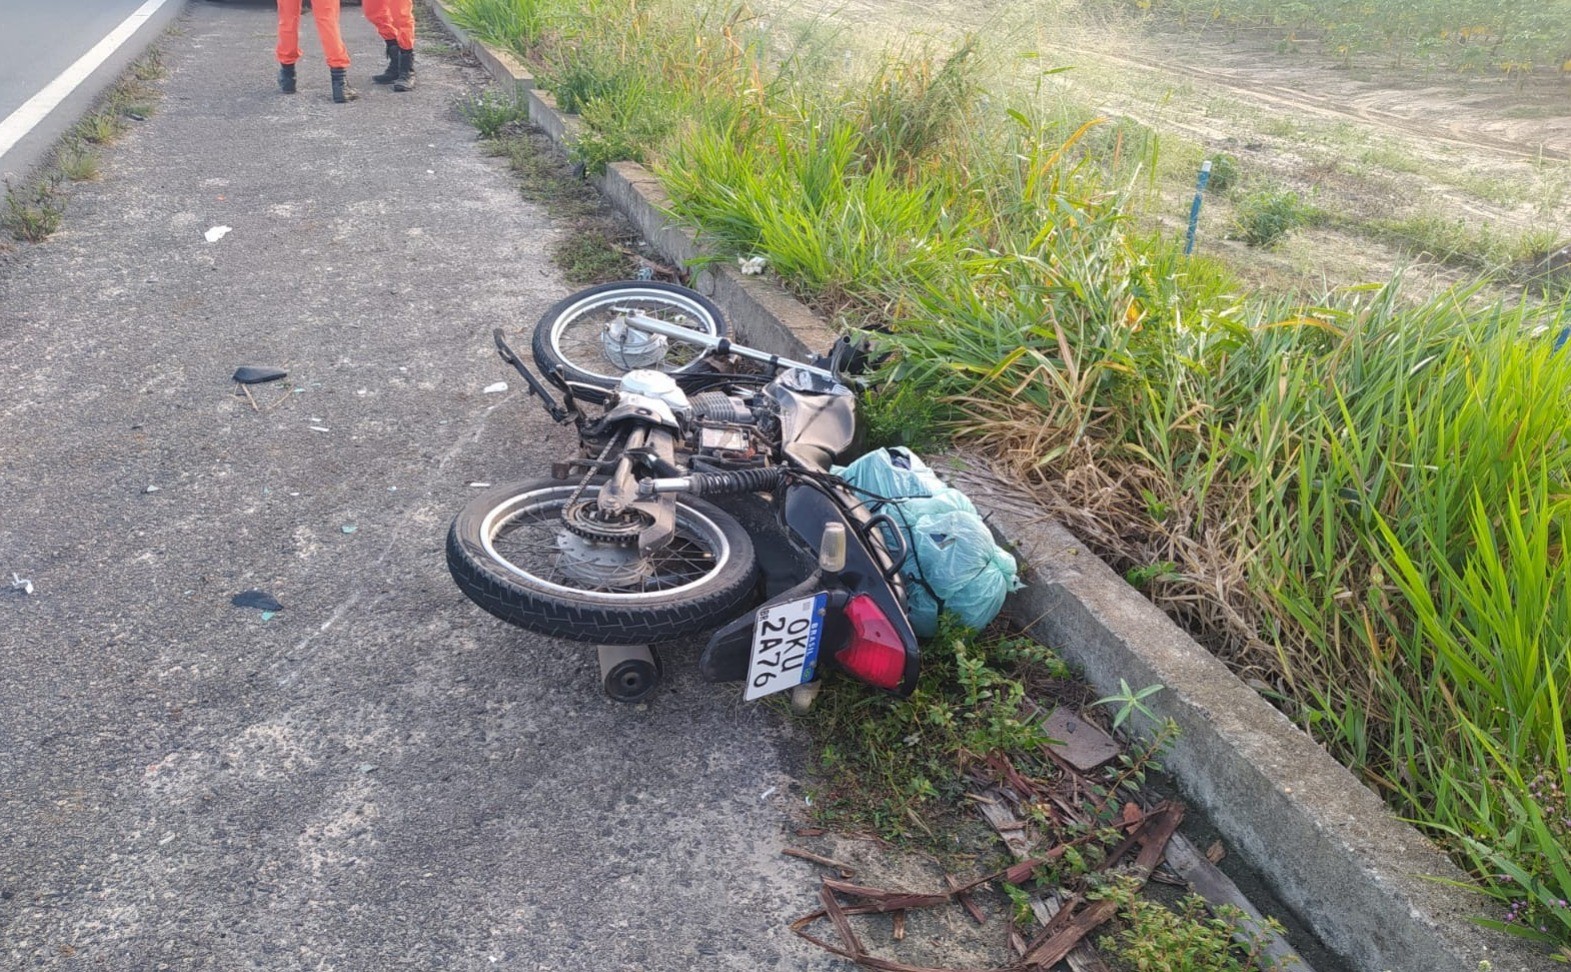 Dois motociclistas morrem após colisão em rodovia na Bahia